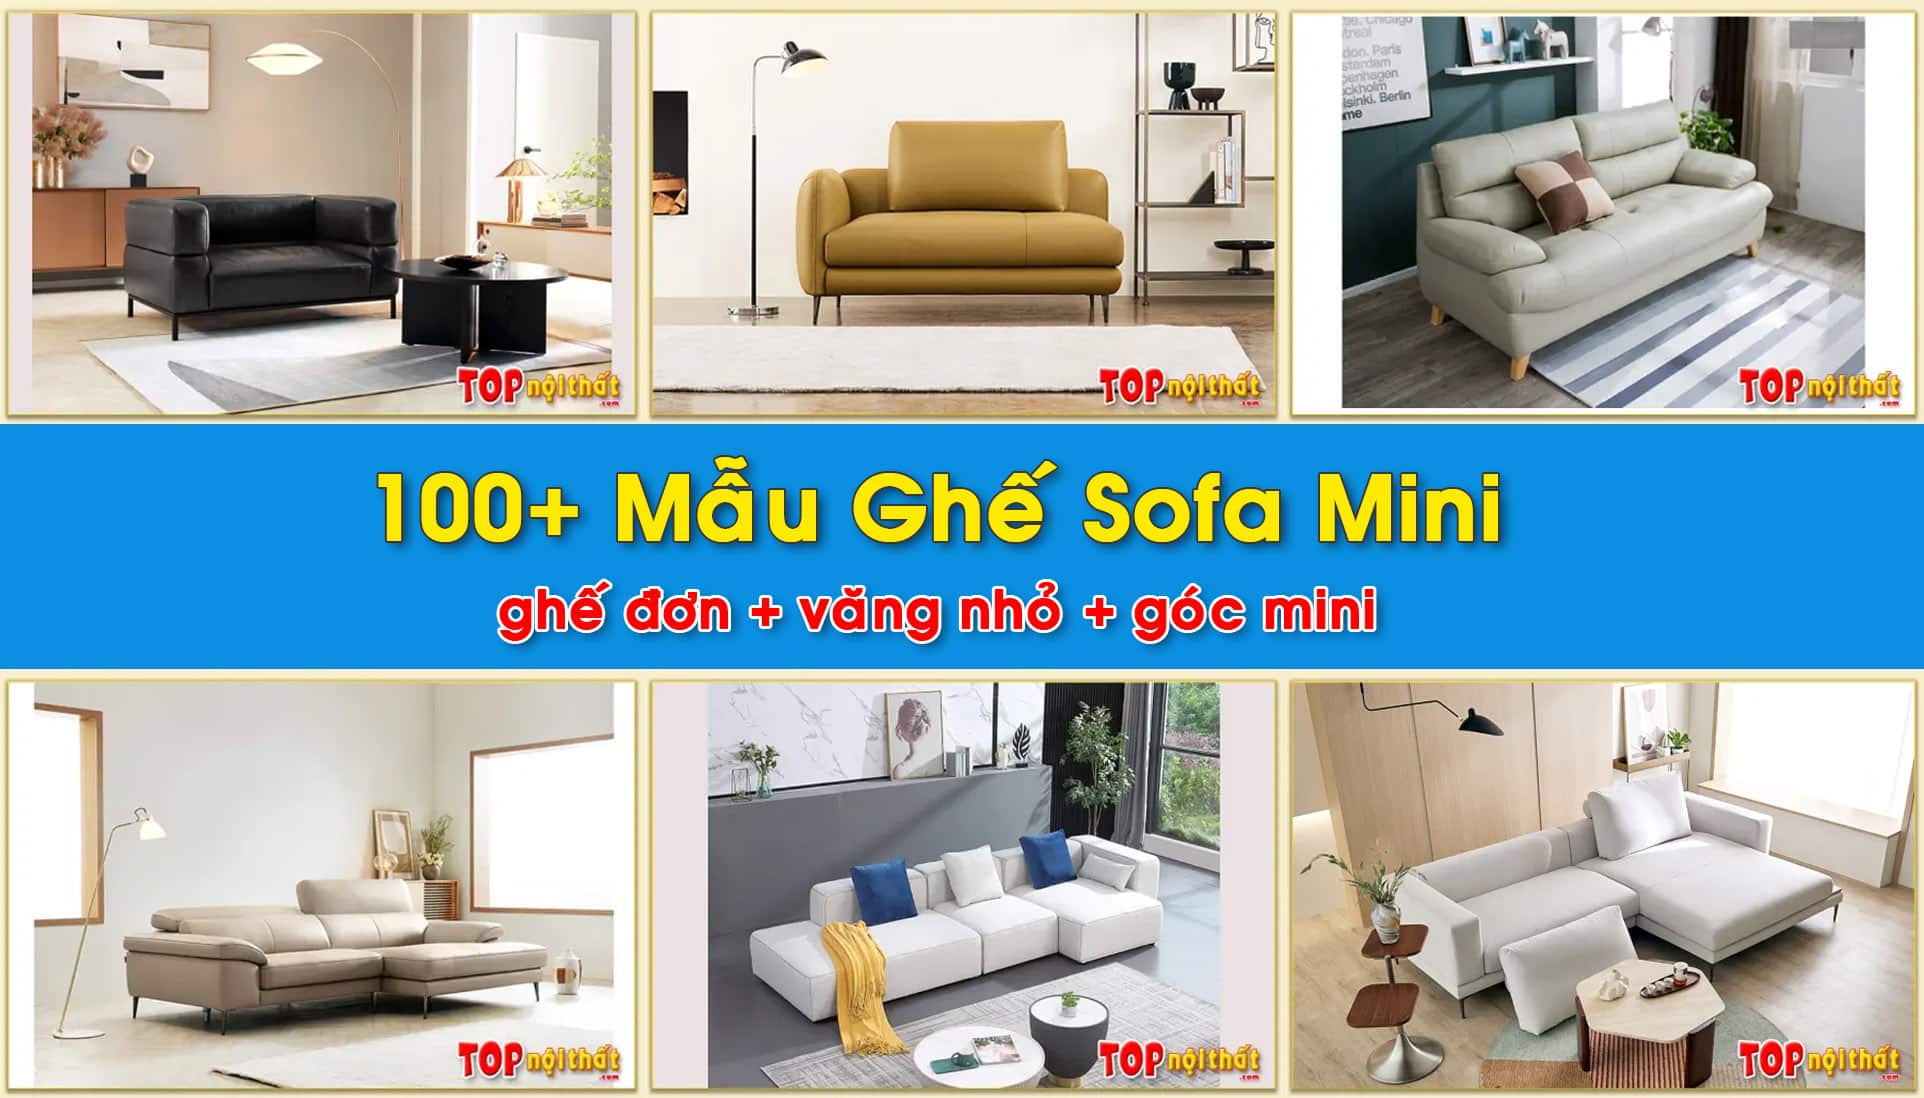 100+ Mẫu Ghế Sofa Mini Nhỏ Gọn, Kê Phòng Ngủ, Phòng Khách Nhỏ